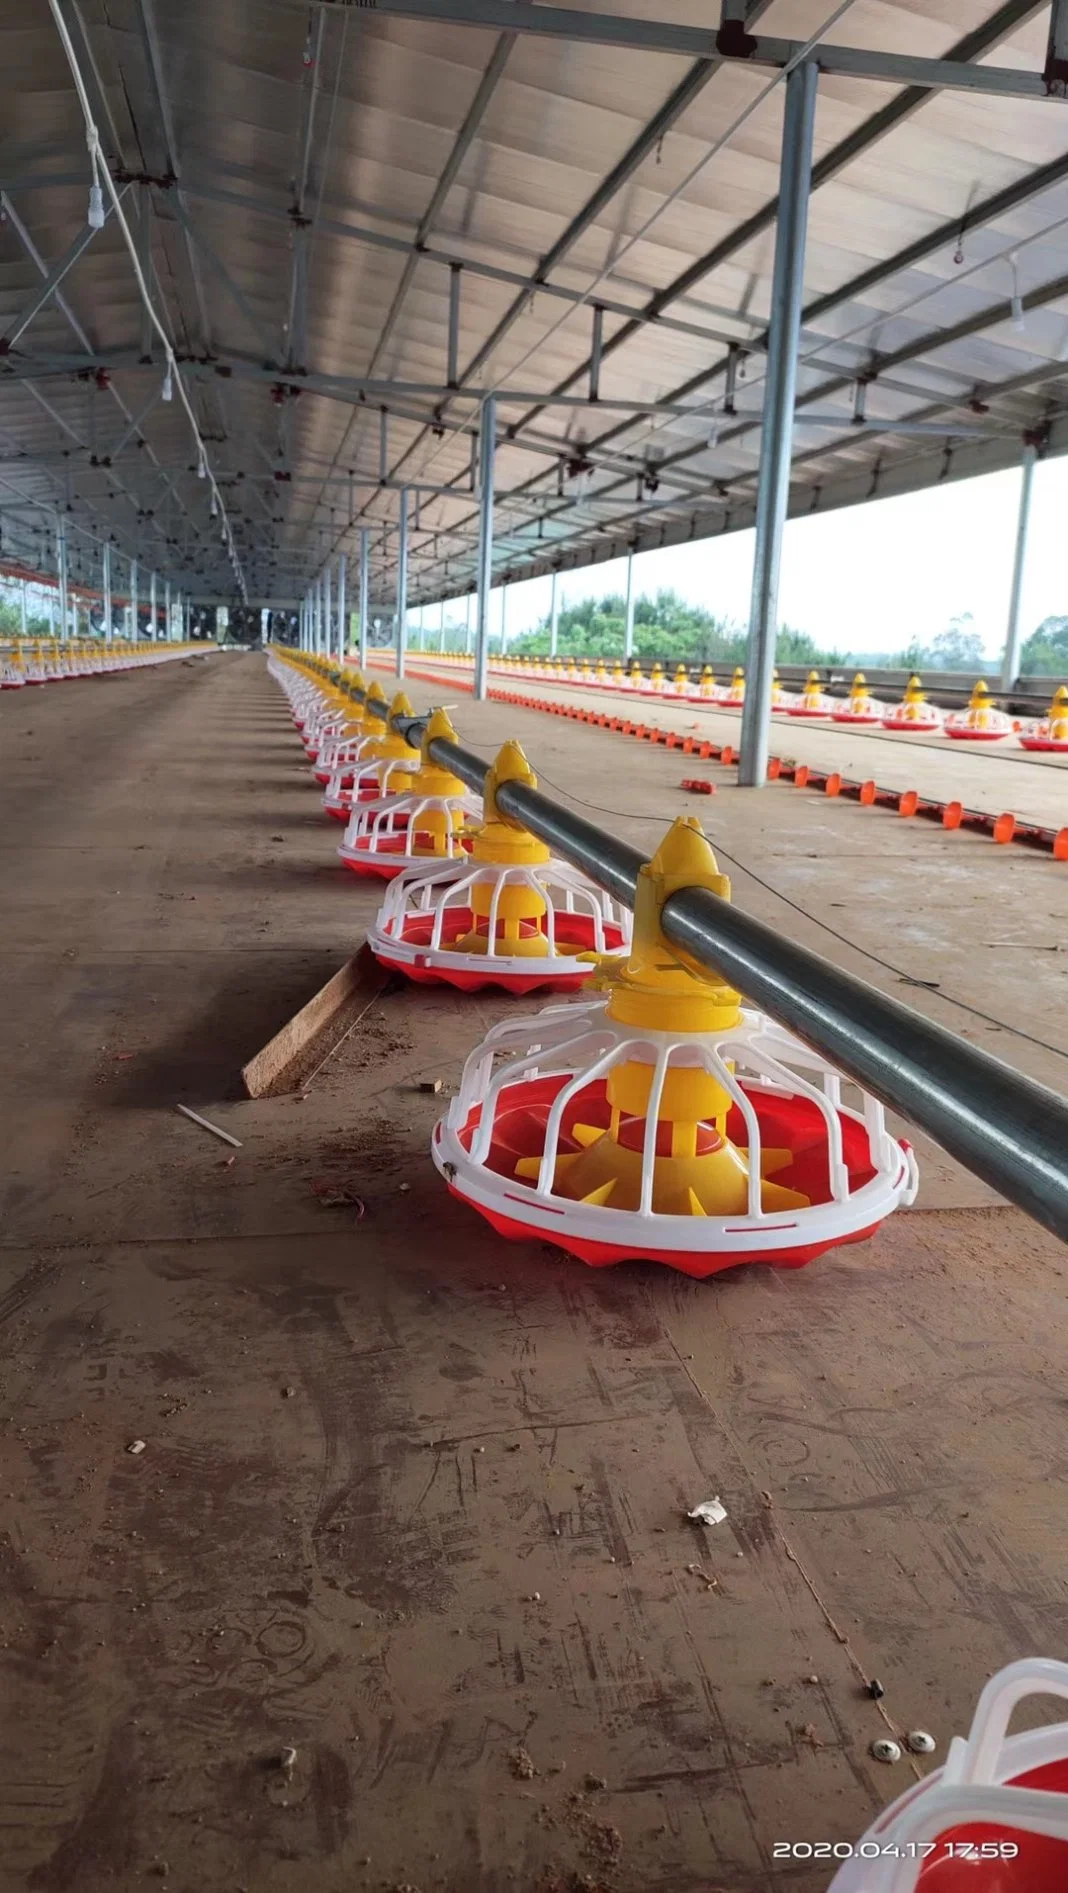 Equipamento do sistema automático de alimentação de frangos de corte para a Fazenda de criação de frangos de corte Gado